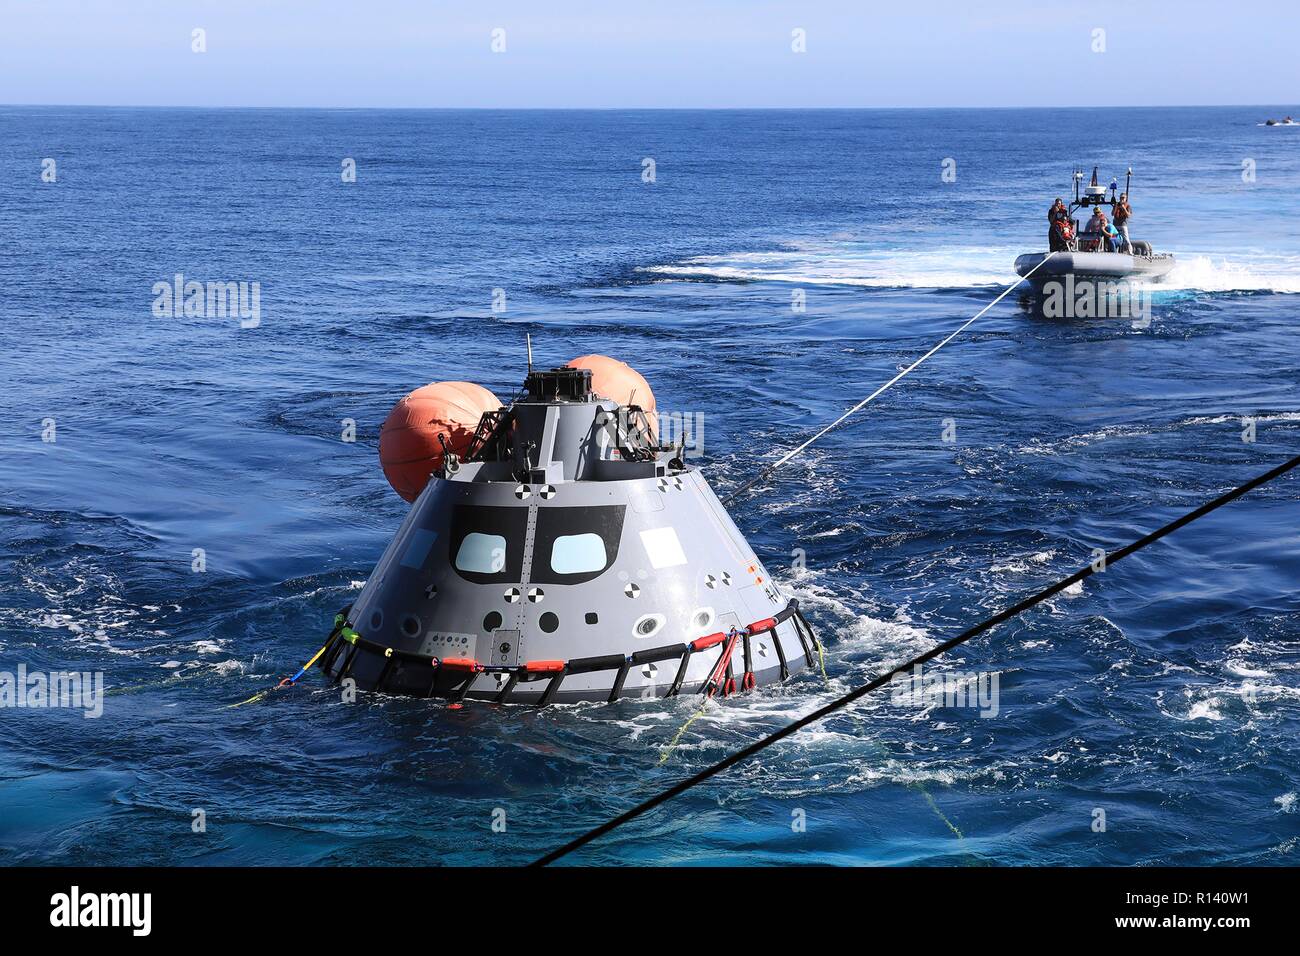 La NASA squadra di recupero e U.S. Navy divers tirare la Orion la generazione successiva capsula spaziale in posizione per una prova di recupero 1 novembre 2018 nell'Oceano Pacifico. La NASA e gli Stati Uniti La marina non ha eseguito oceano aperto il recupero di un manned space capsule poiché il progetto Apollo negli anni sessanta e sono le procedure di test e la bulloneria che verranno utilizzate per recuperare il veicolo spaziale Orion dopo che schizza verso il basso nell'Oceano Pacifico seguendo il futuro dello spazio profondo missioni di esplorazione. Foto Stock